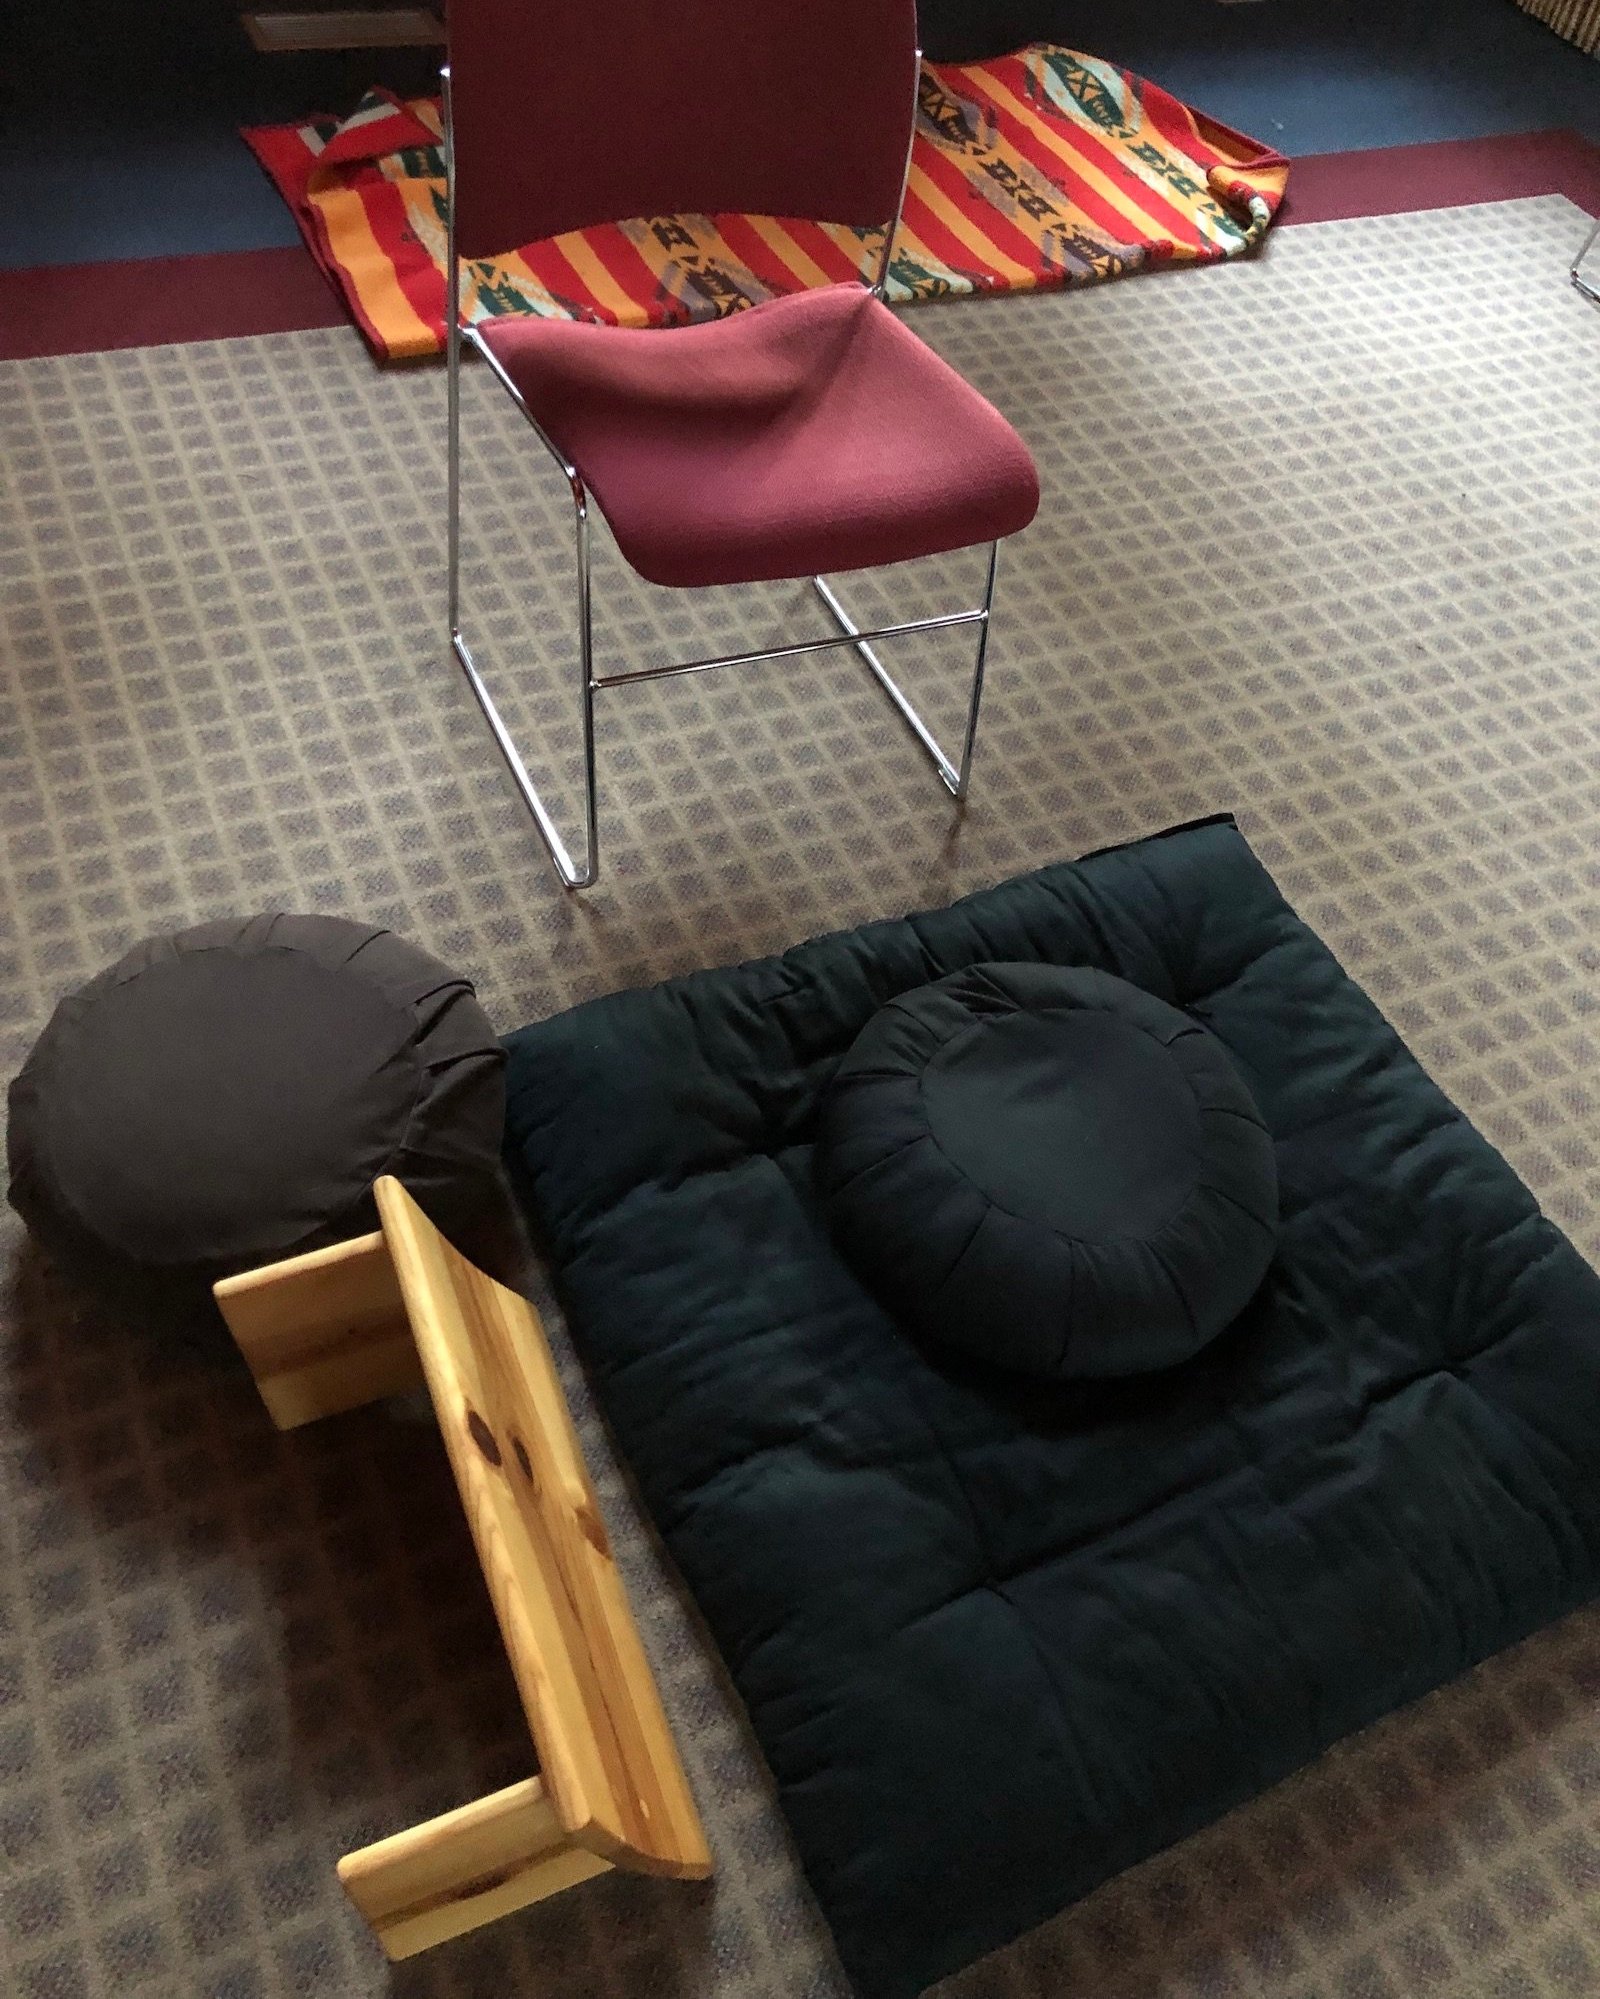 RSMS-retreat-chair+and+cushion-IMG_1494.jpg